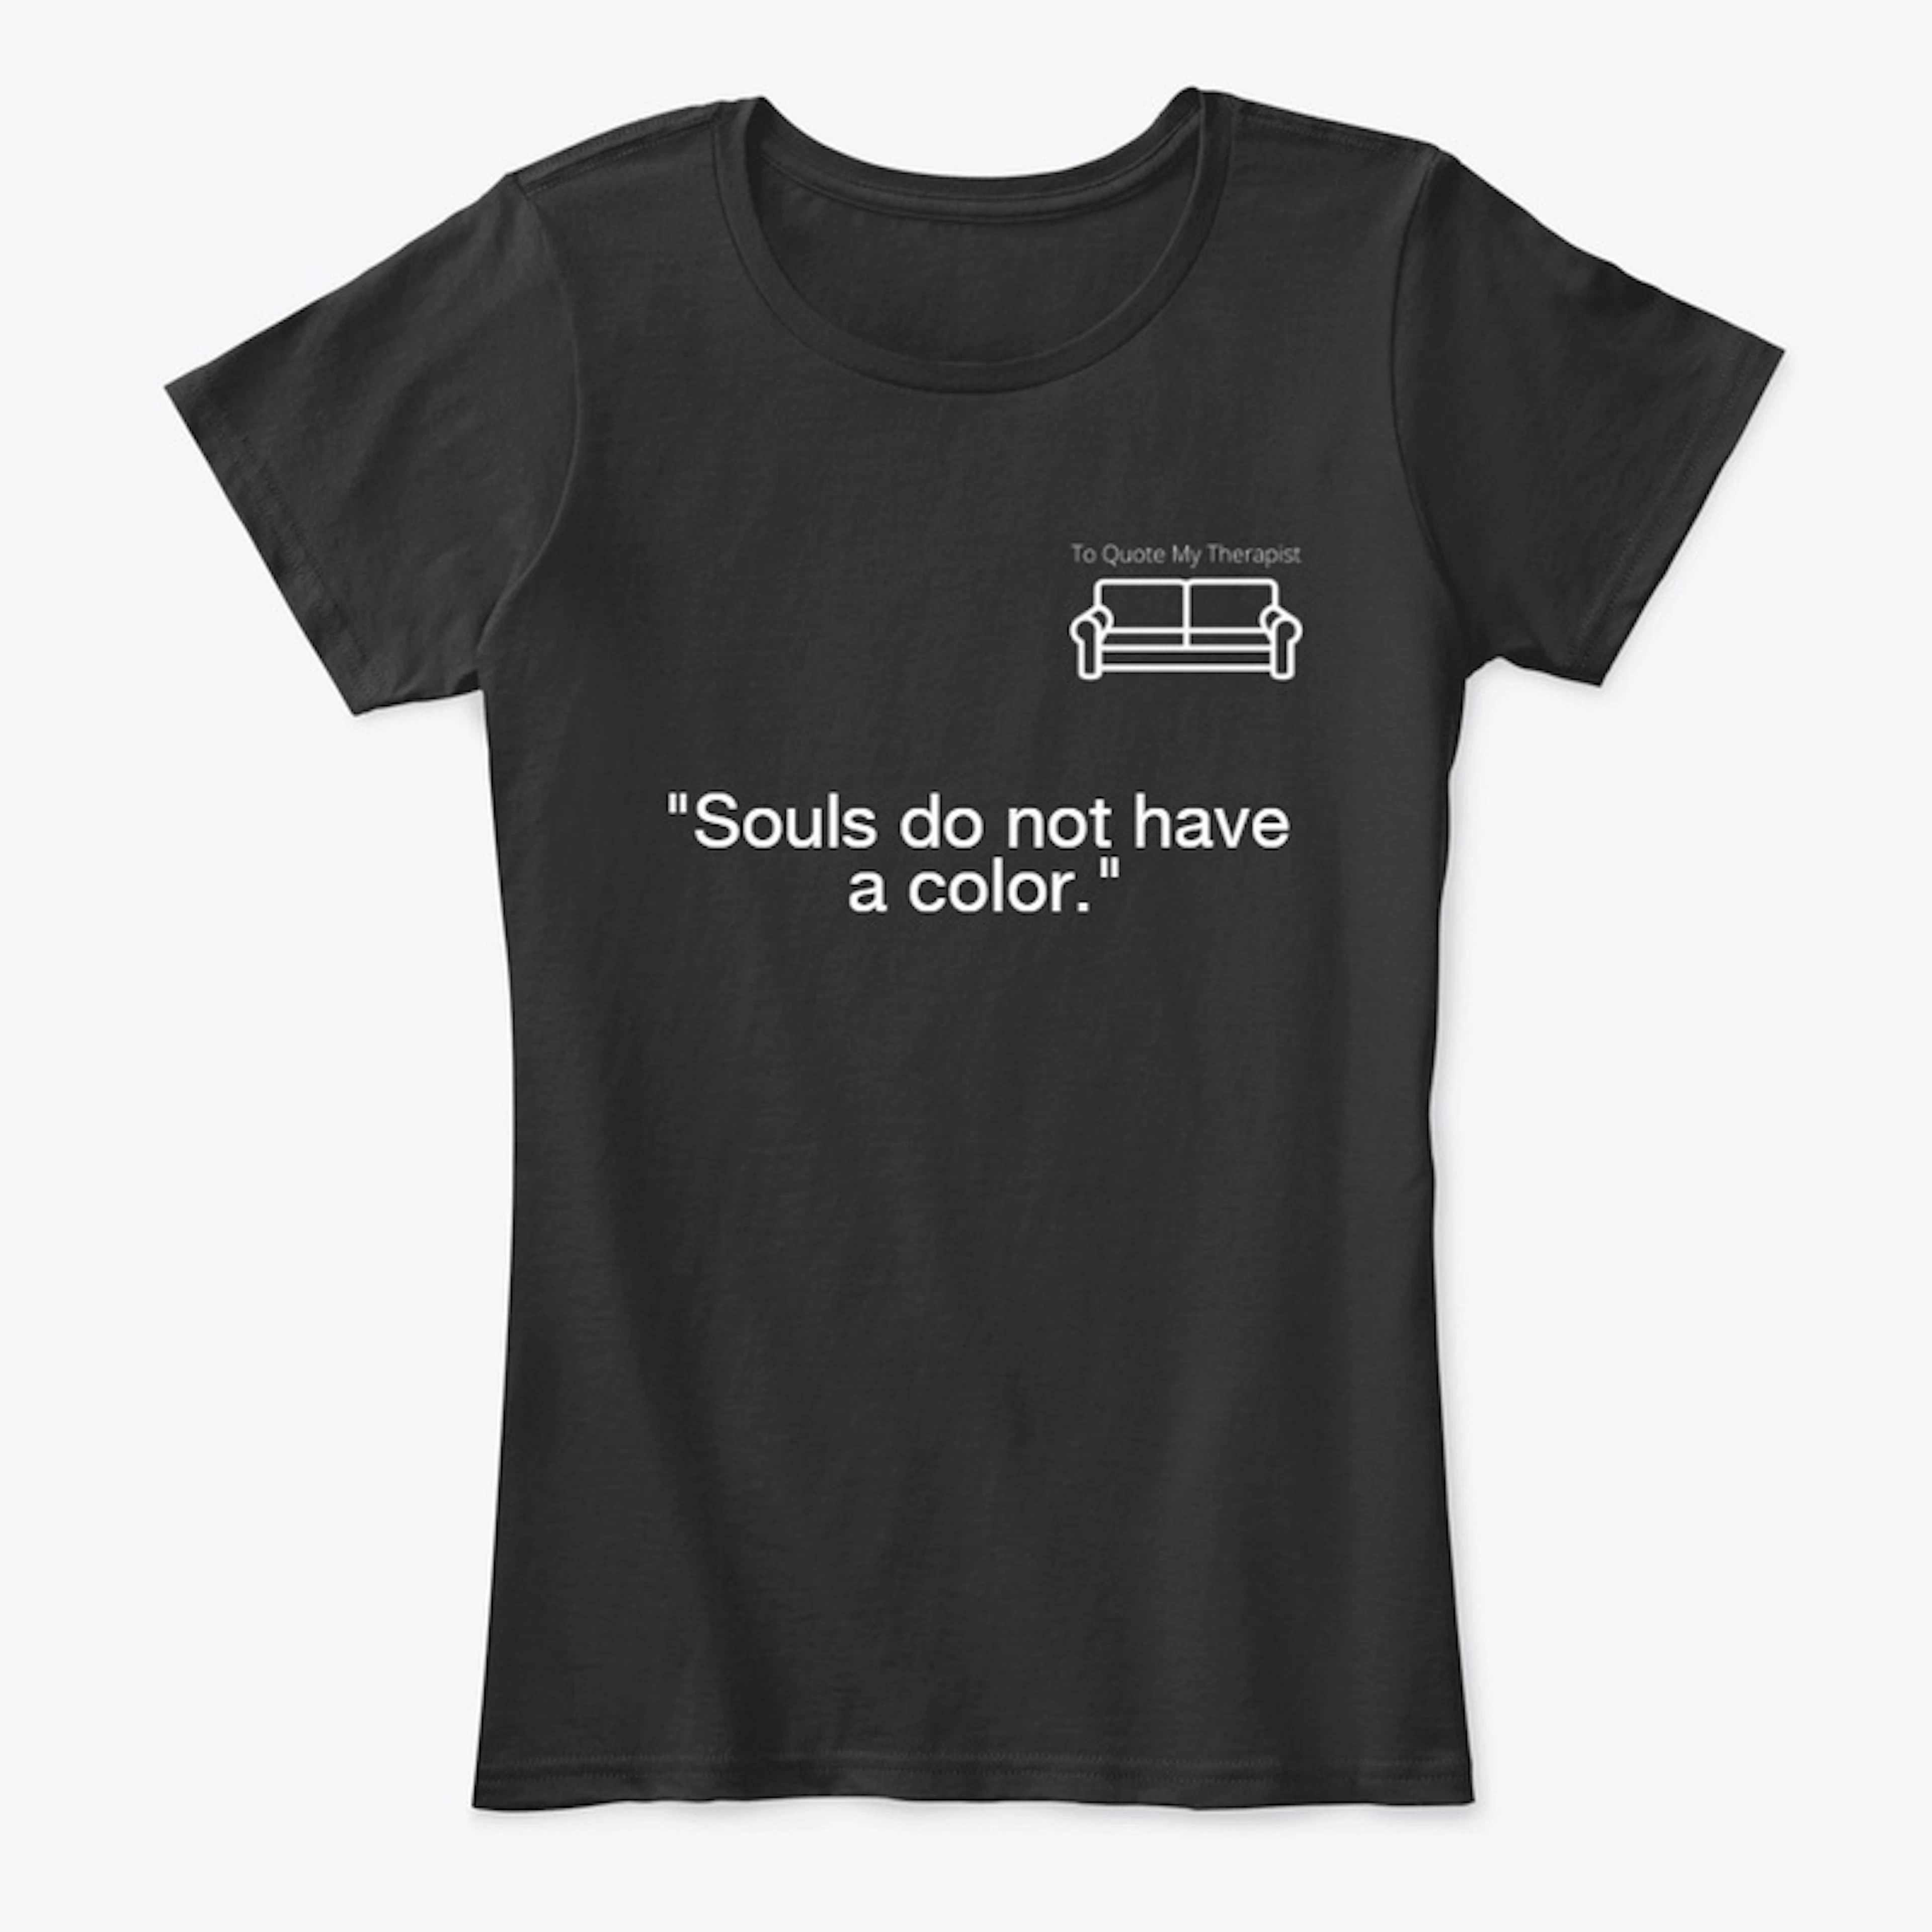 TQMT - "Souls Do Not Have A Color"